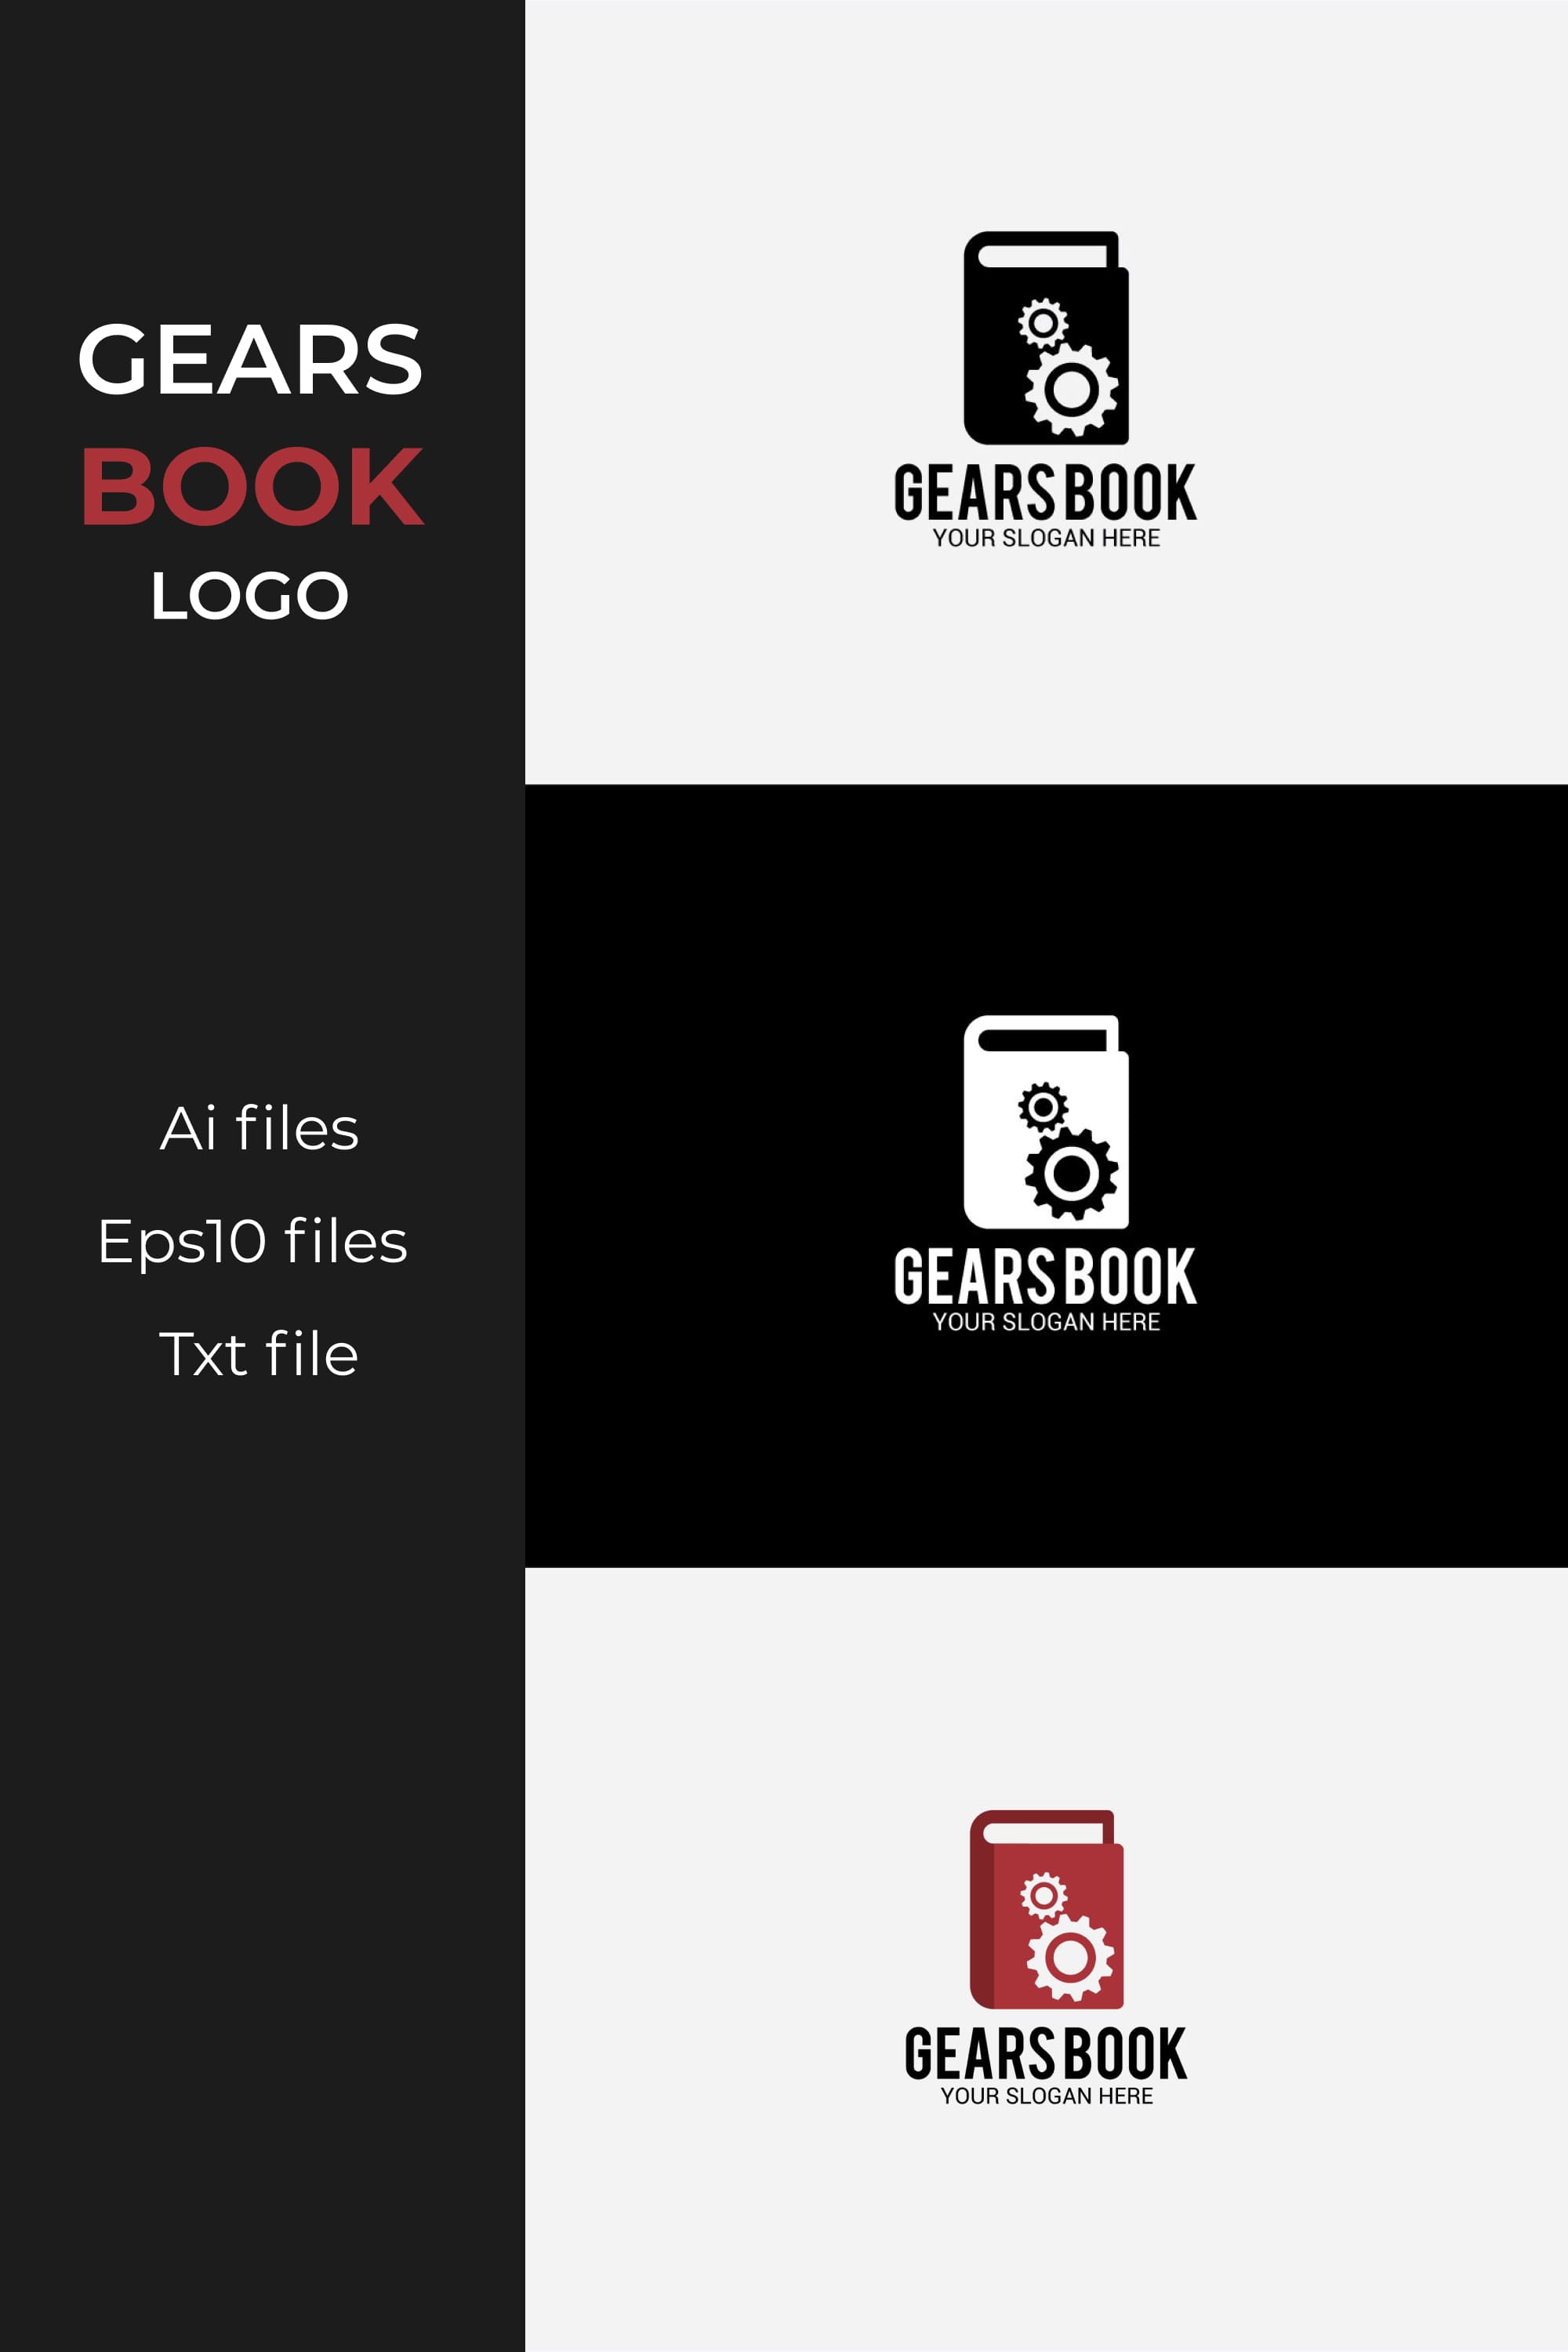 gears book logo pinterest